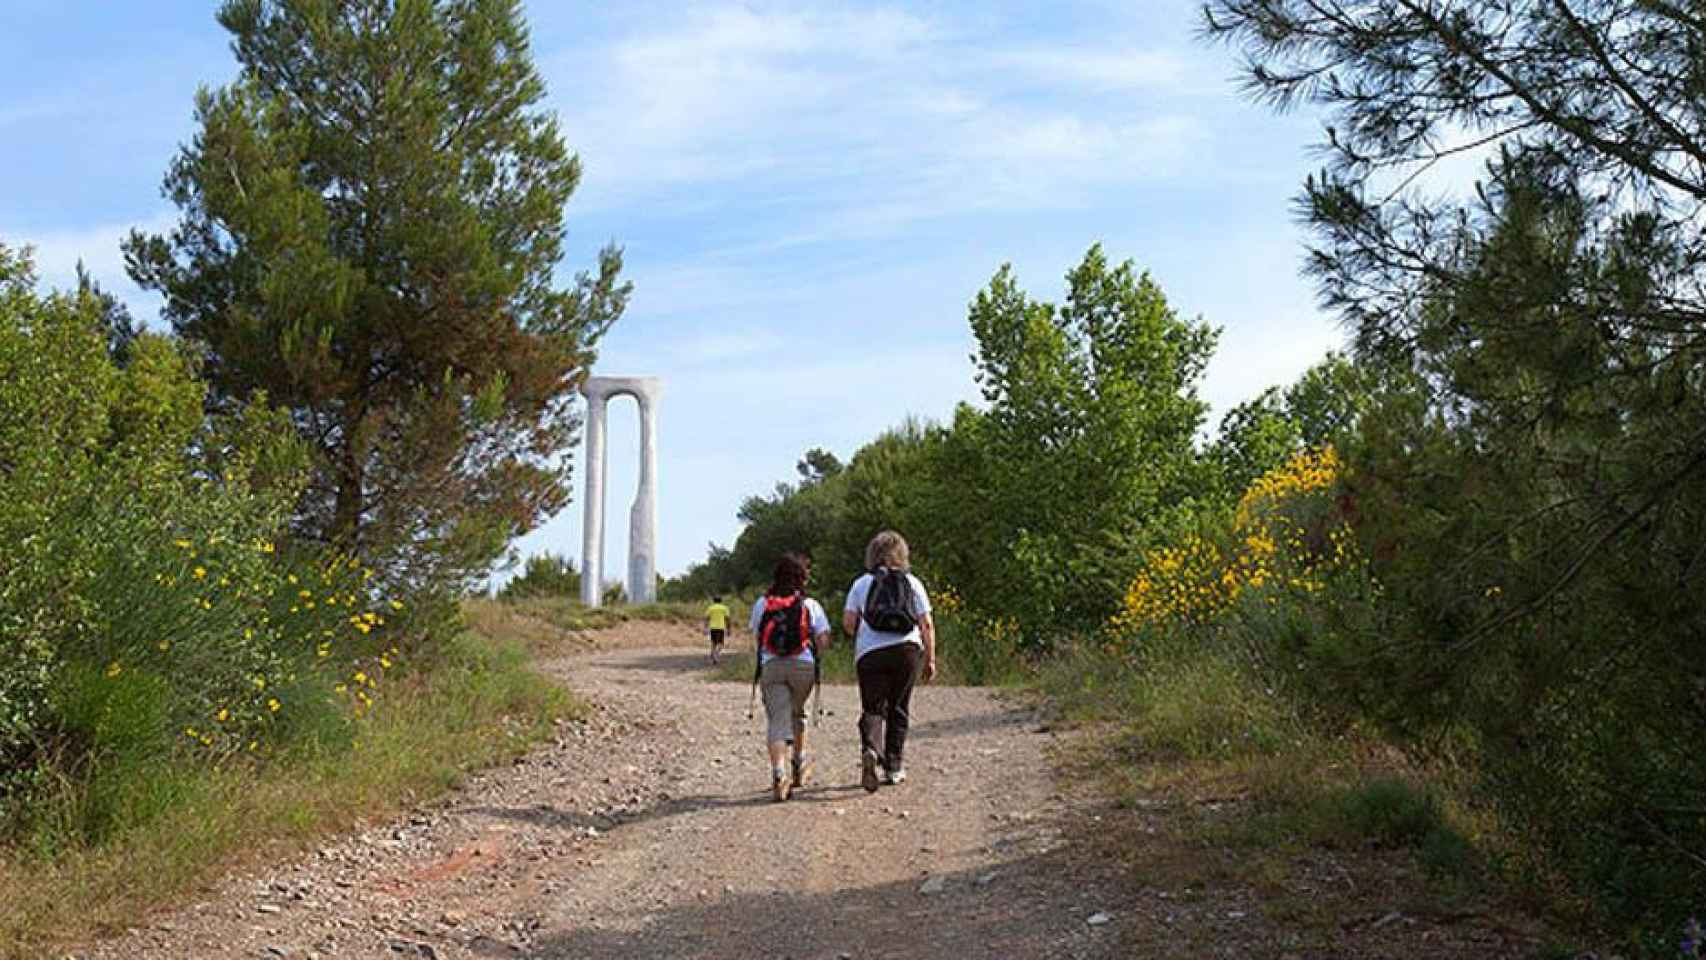 Senderistas recorriendo una de las numerosas rutas naturales de Girona, como la zona de Les Gavarres, donde Unos excursionistas han hallado muerto a un anciano desaparecido / JORDI S. CARRERA - AJUNTAMENT DE GIRONA